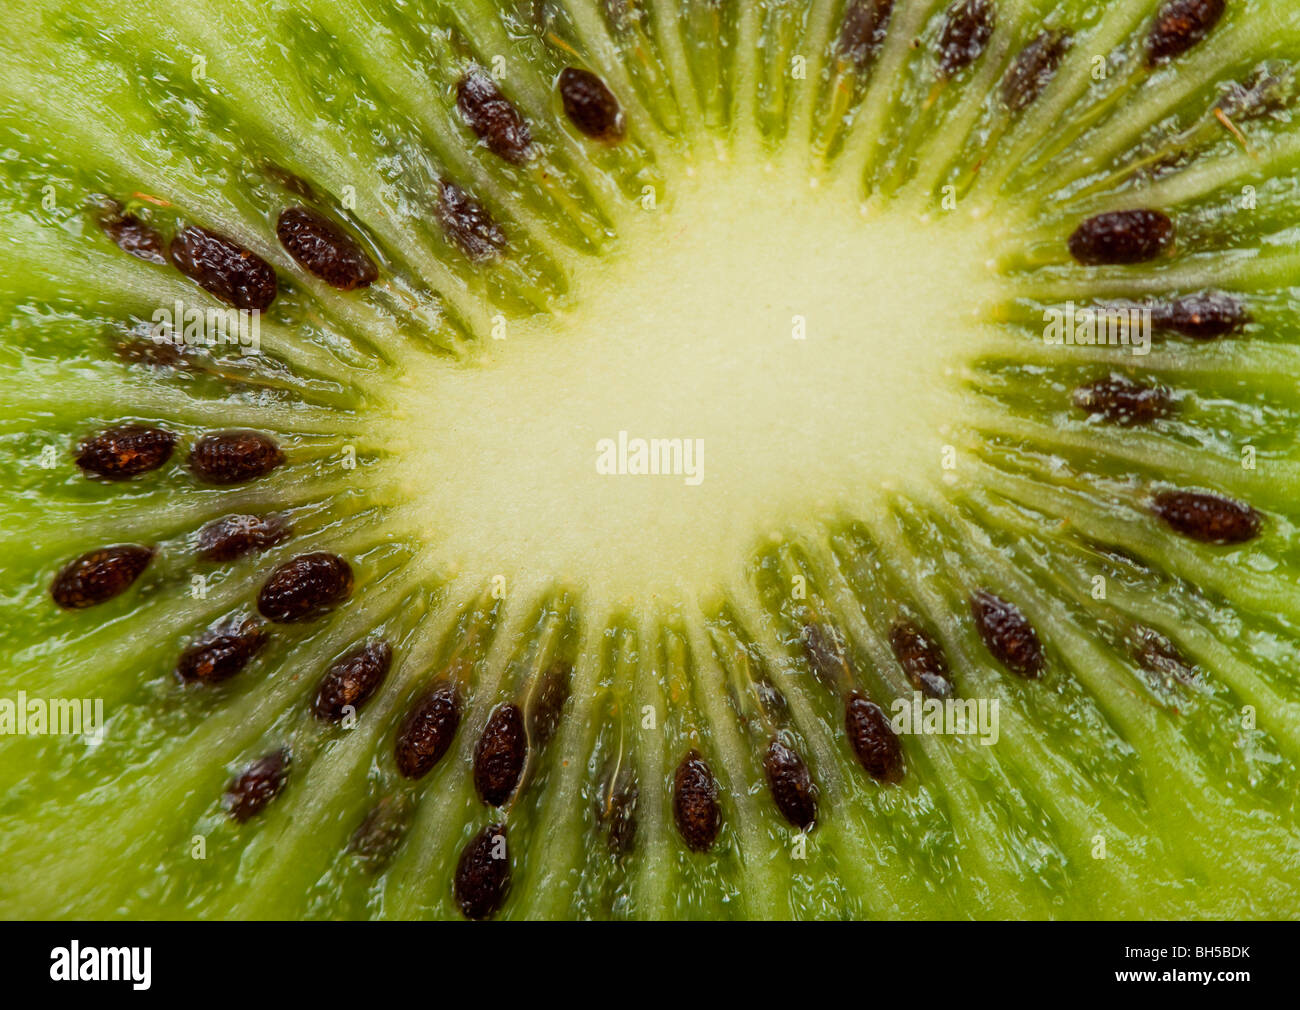 Extreme Makroaufnahme einer Kiwi. Einzelne Samen können gesehen werden. Stockfoto